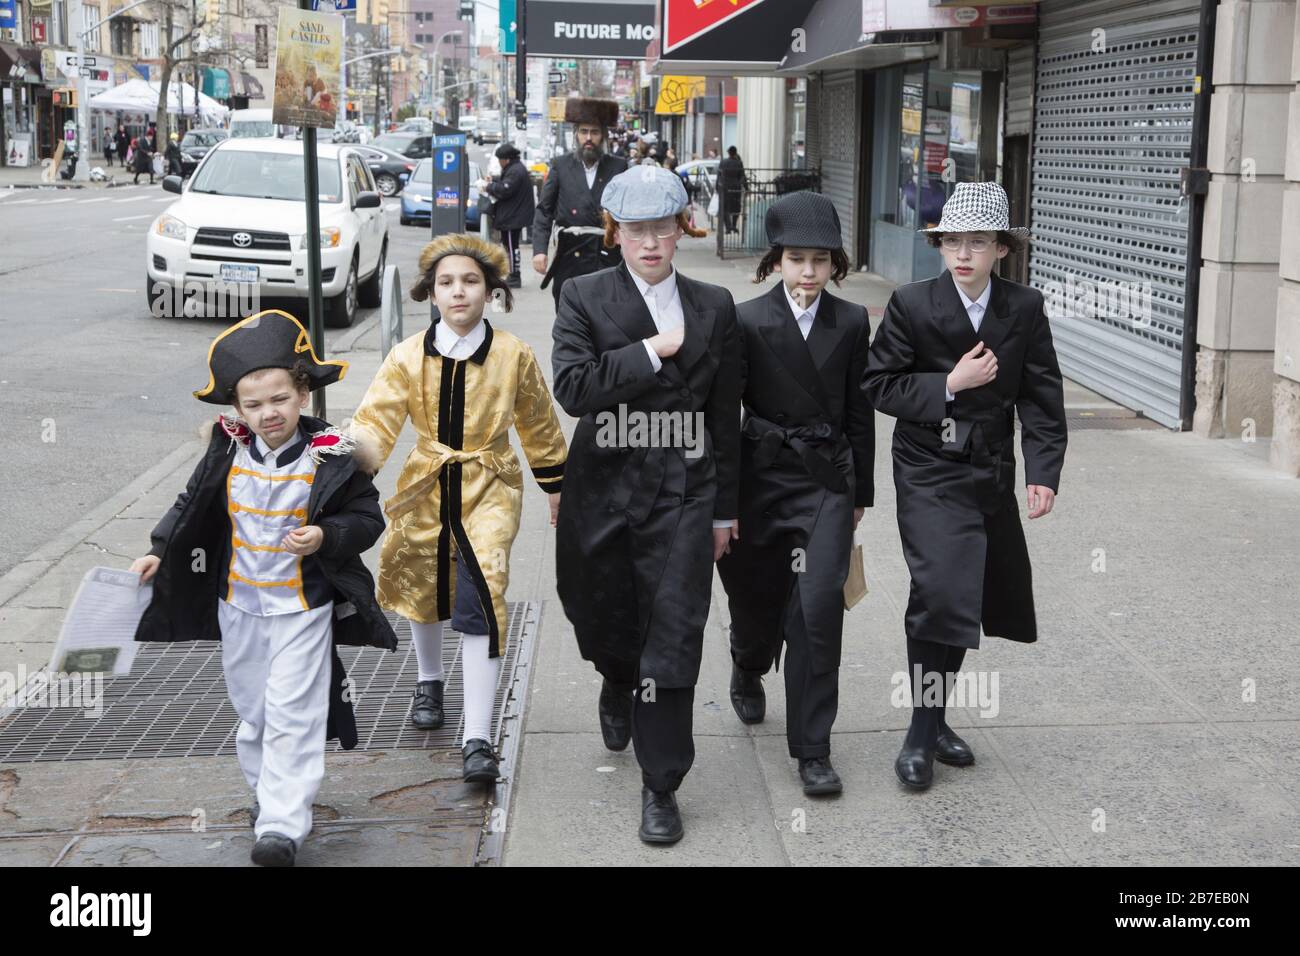 Die orthodoxe jüdische Gemeinde im Borough Park Brooklyn feiert den festlichen Urlaub von Purim, indem sie Kostüme trägt, Armen spendet, leckere Speisen isst und im Allgemeinen eine gute Zeit hat. Die Leute auf der 13th Avenue. Purim wird jedes Jahr am 14. Des hebräischen Monats Adar gefeiert. Es erinnert an die Errettung des jüdischen Volkes im alten Perserreich aus Hamans Handlung "alle Juden, jung und alt, Säuglinge und Frauen, an einem einzigen Tag zu vernichten, zu töten und zu vernichten", wie in der Megillah (Buch Esther) festgehalten. Stockfoto